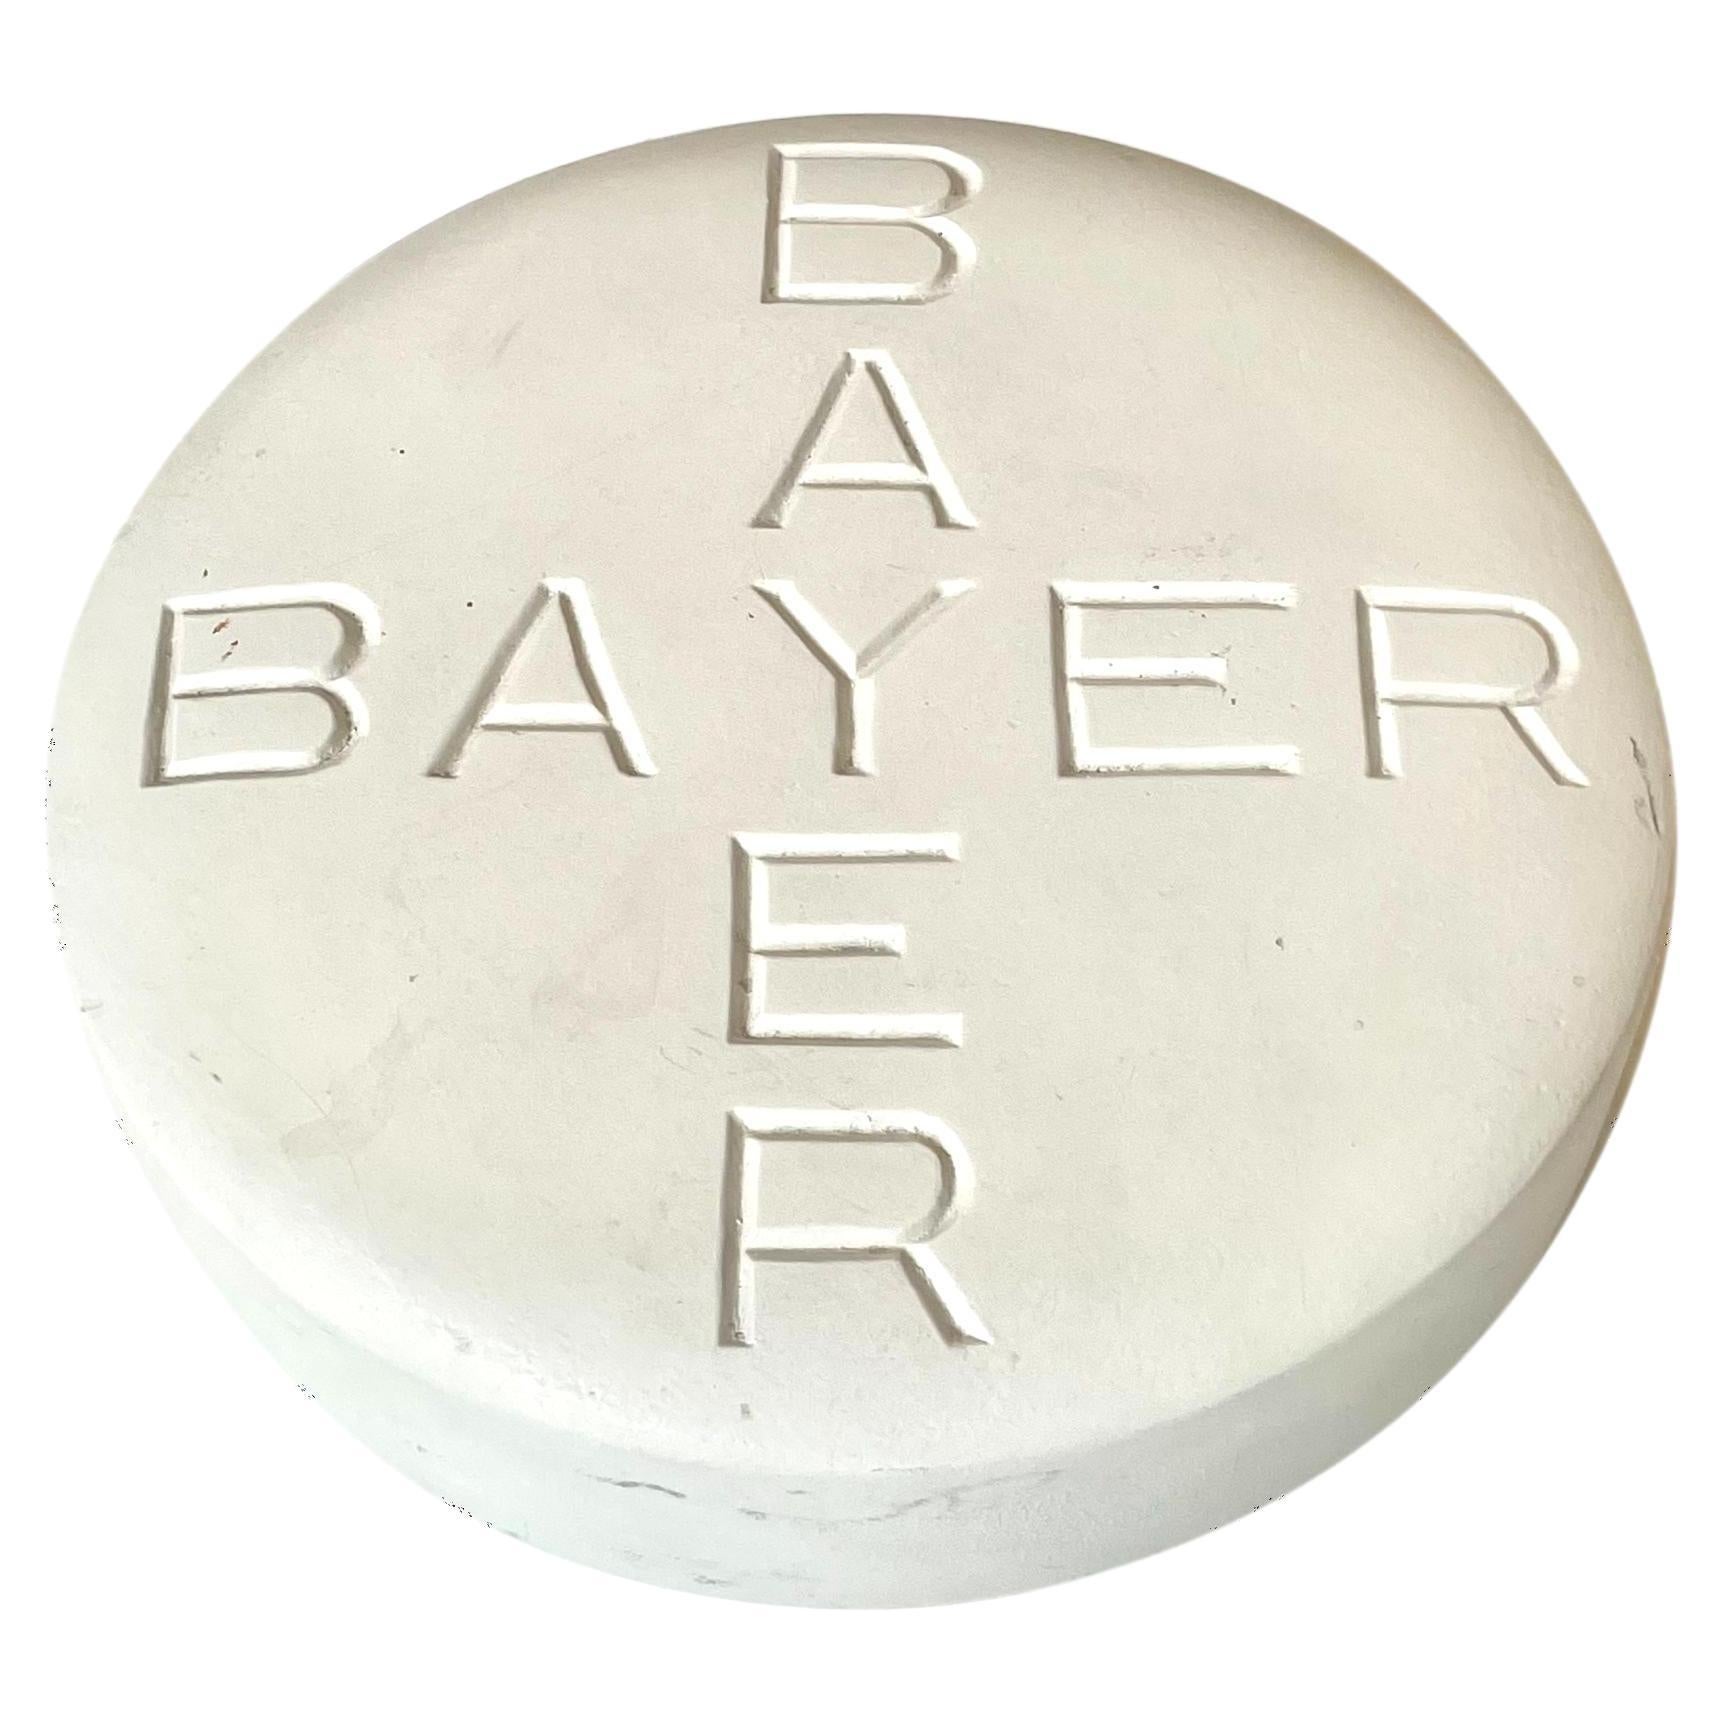 Riesige Bayer-Pille Pop Art